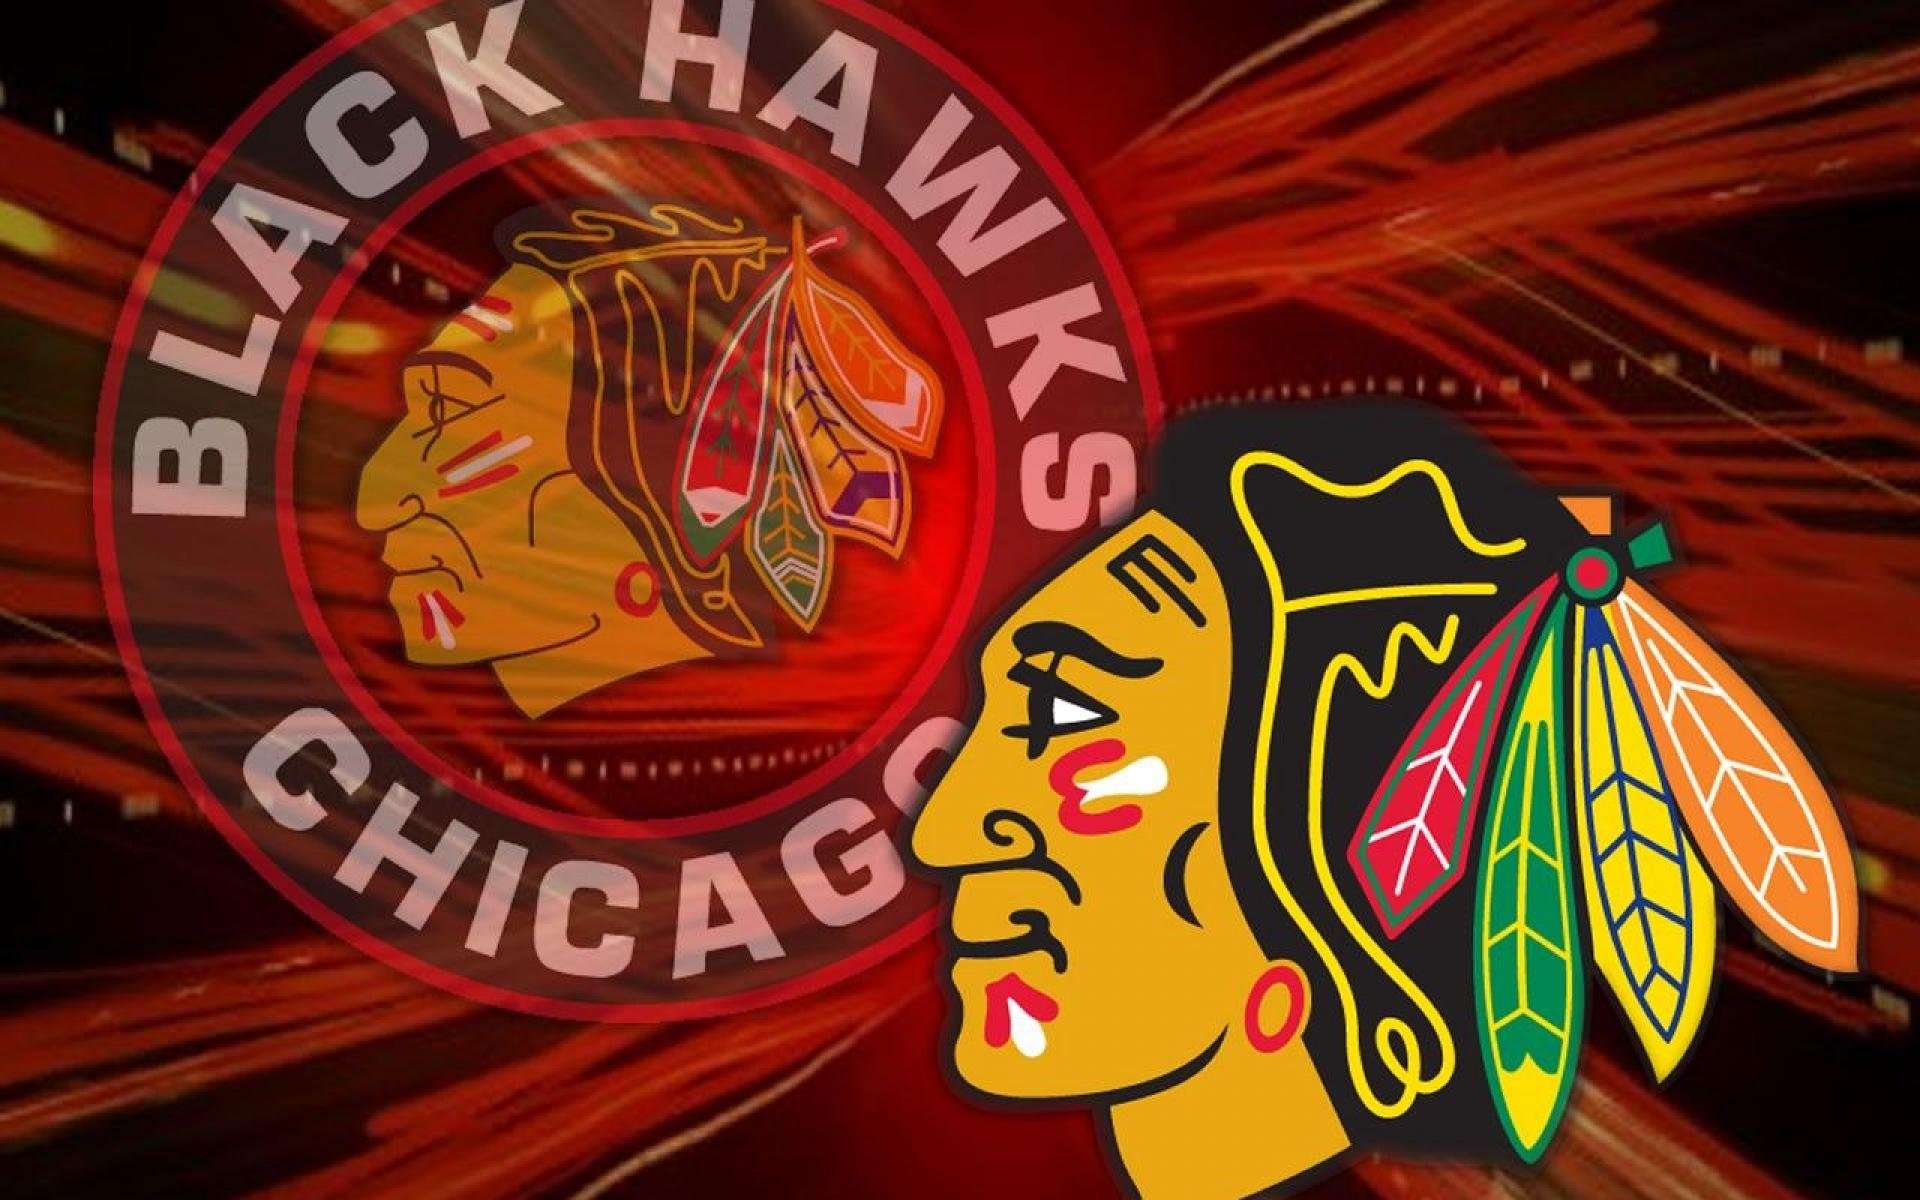 Chicago Blackhawks Nhl Hockey Wallpaper Background